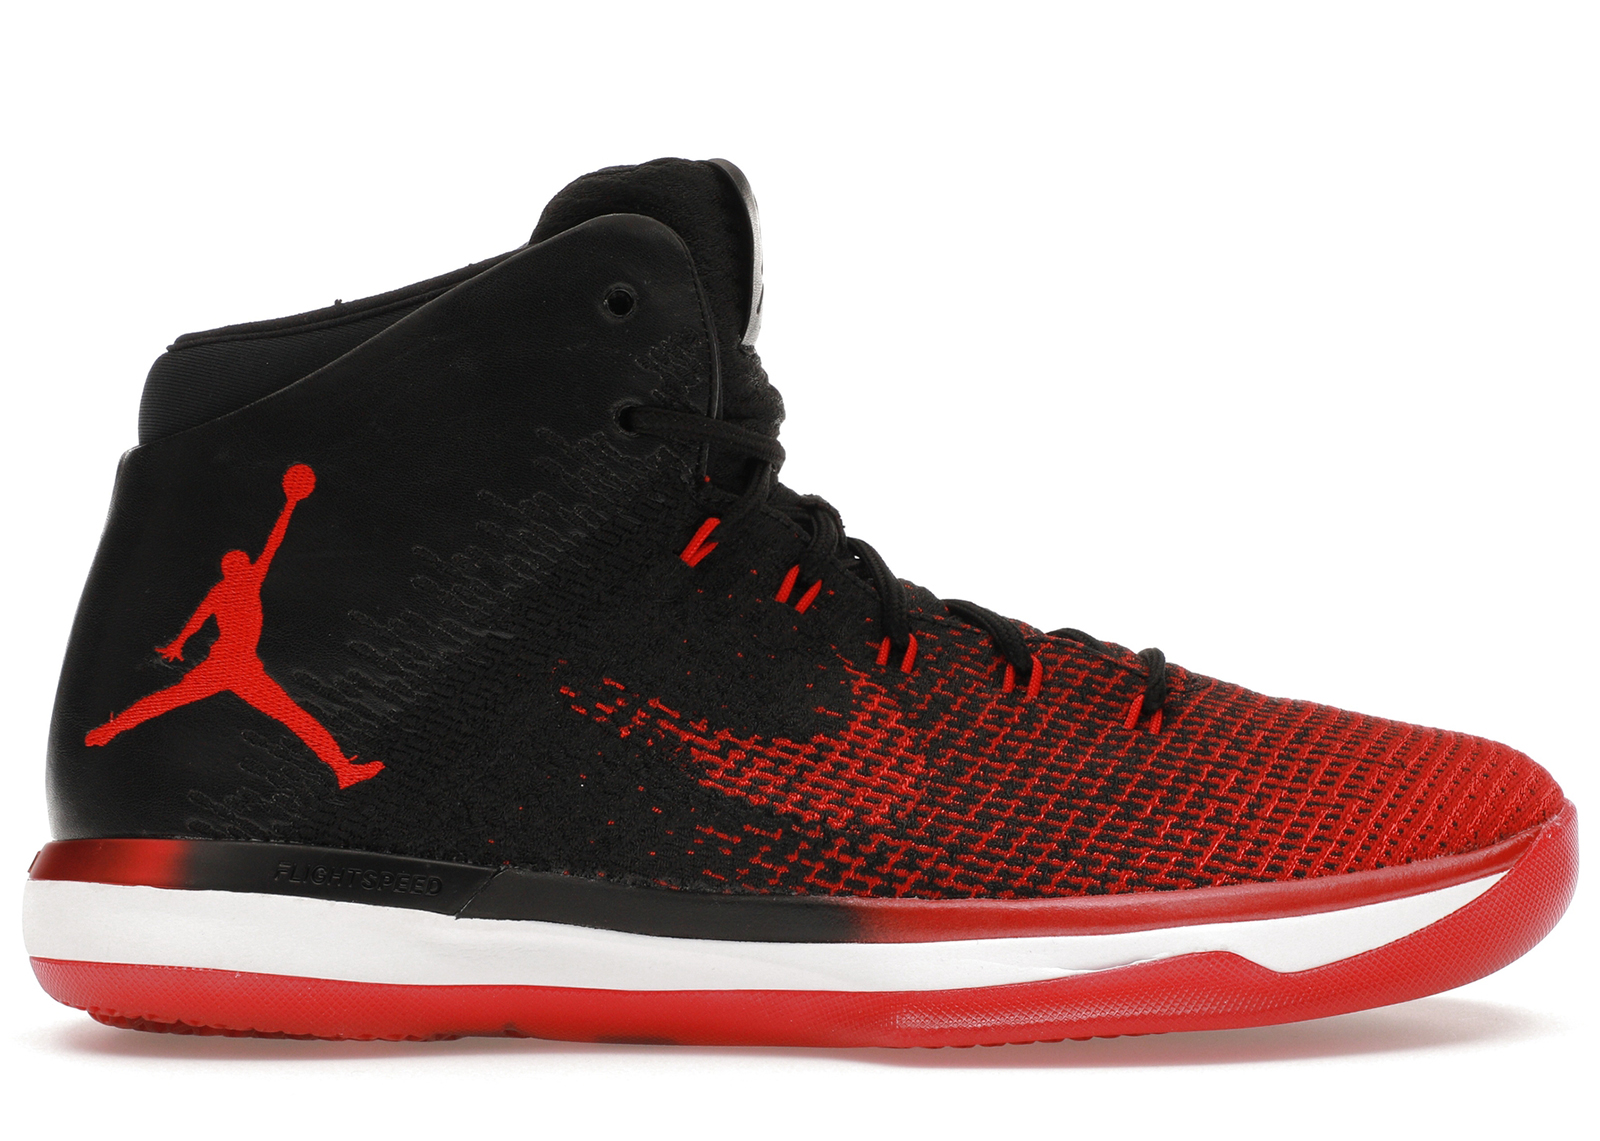 Buy Air Jordan 31 Shoes & New Sneakers - StockX